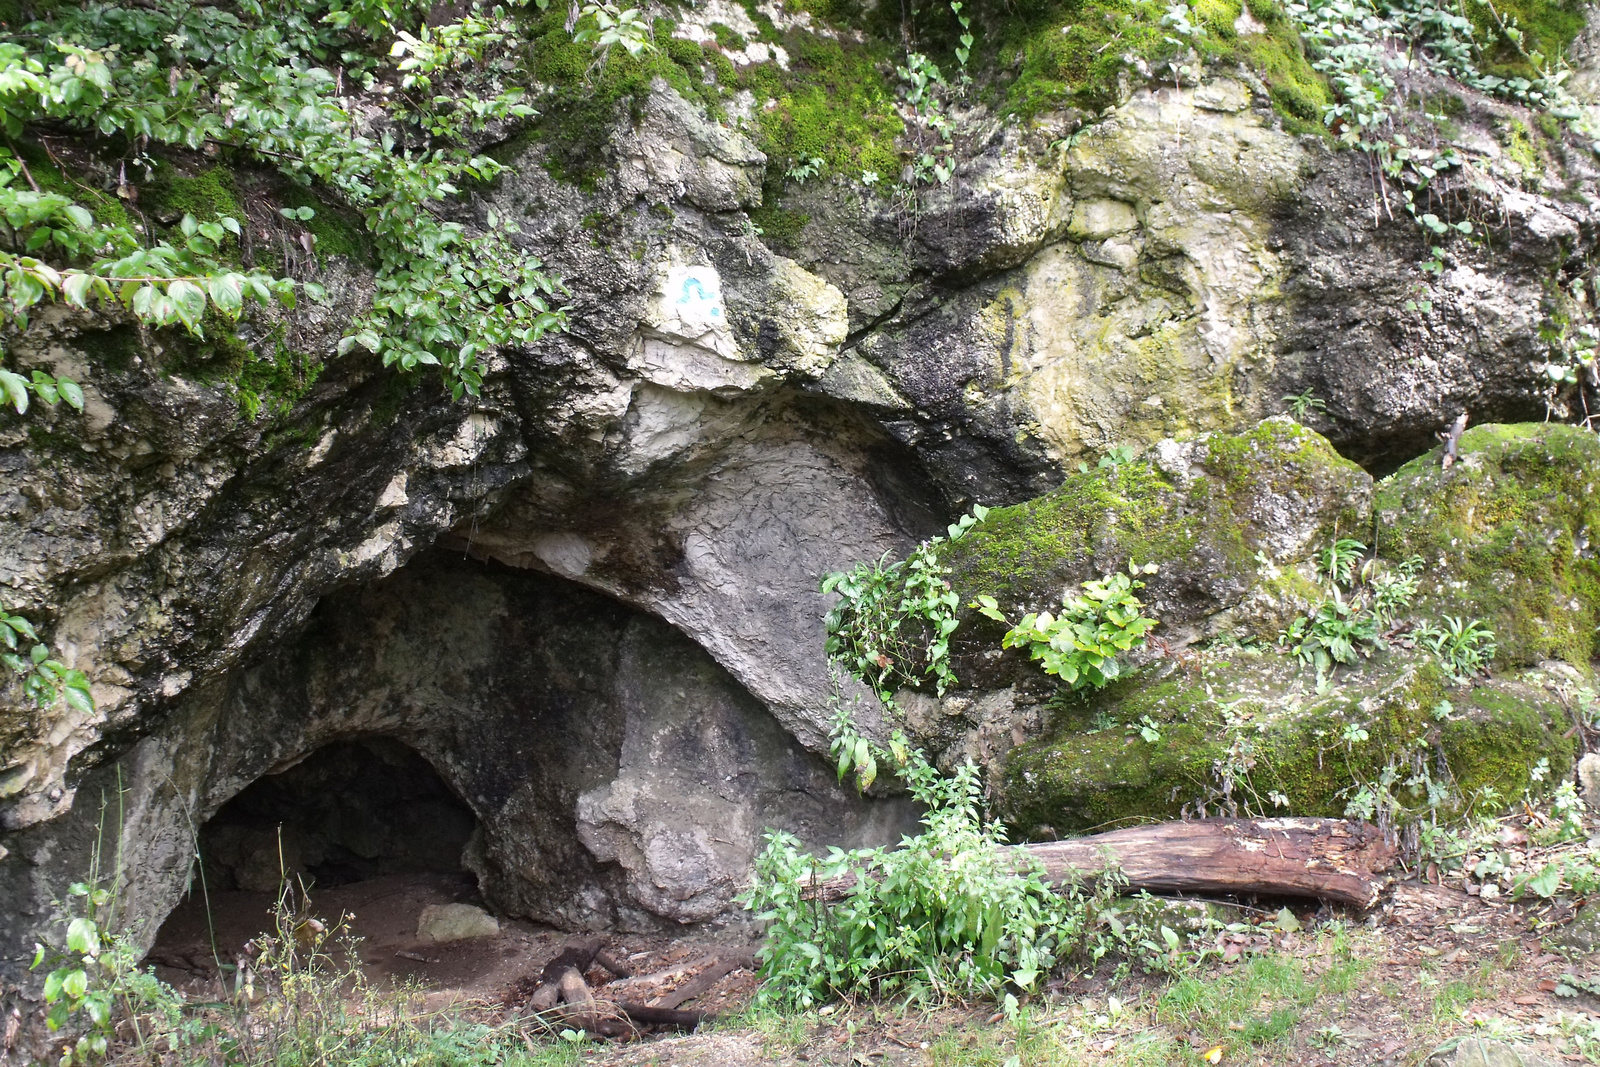 DSCF0018 Likas-kő barlang, Bakonybéltől északra